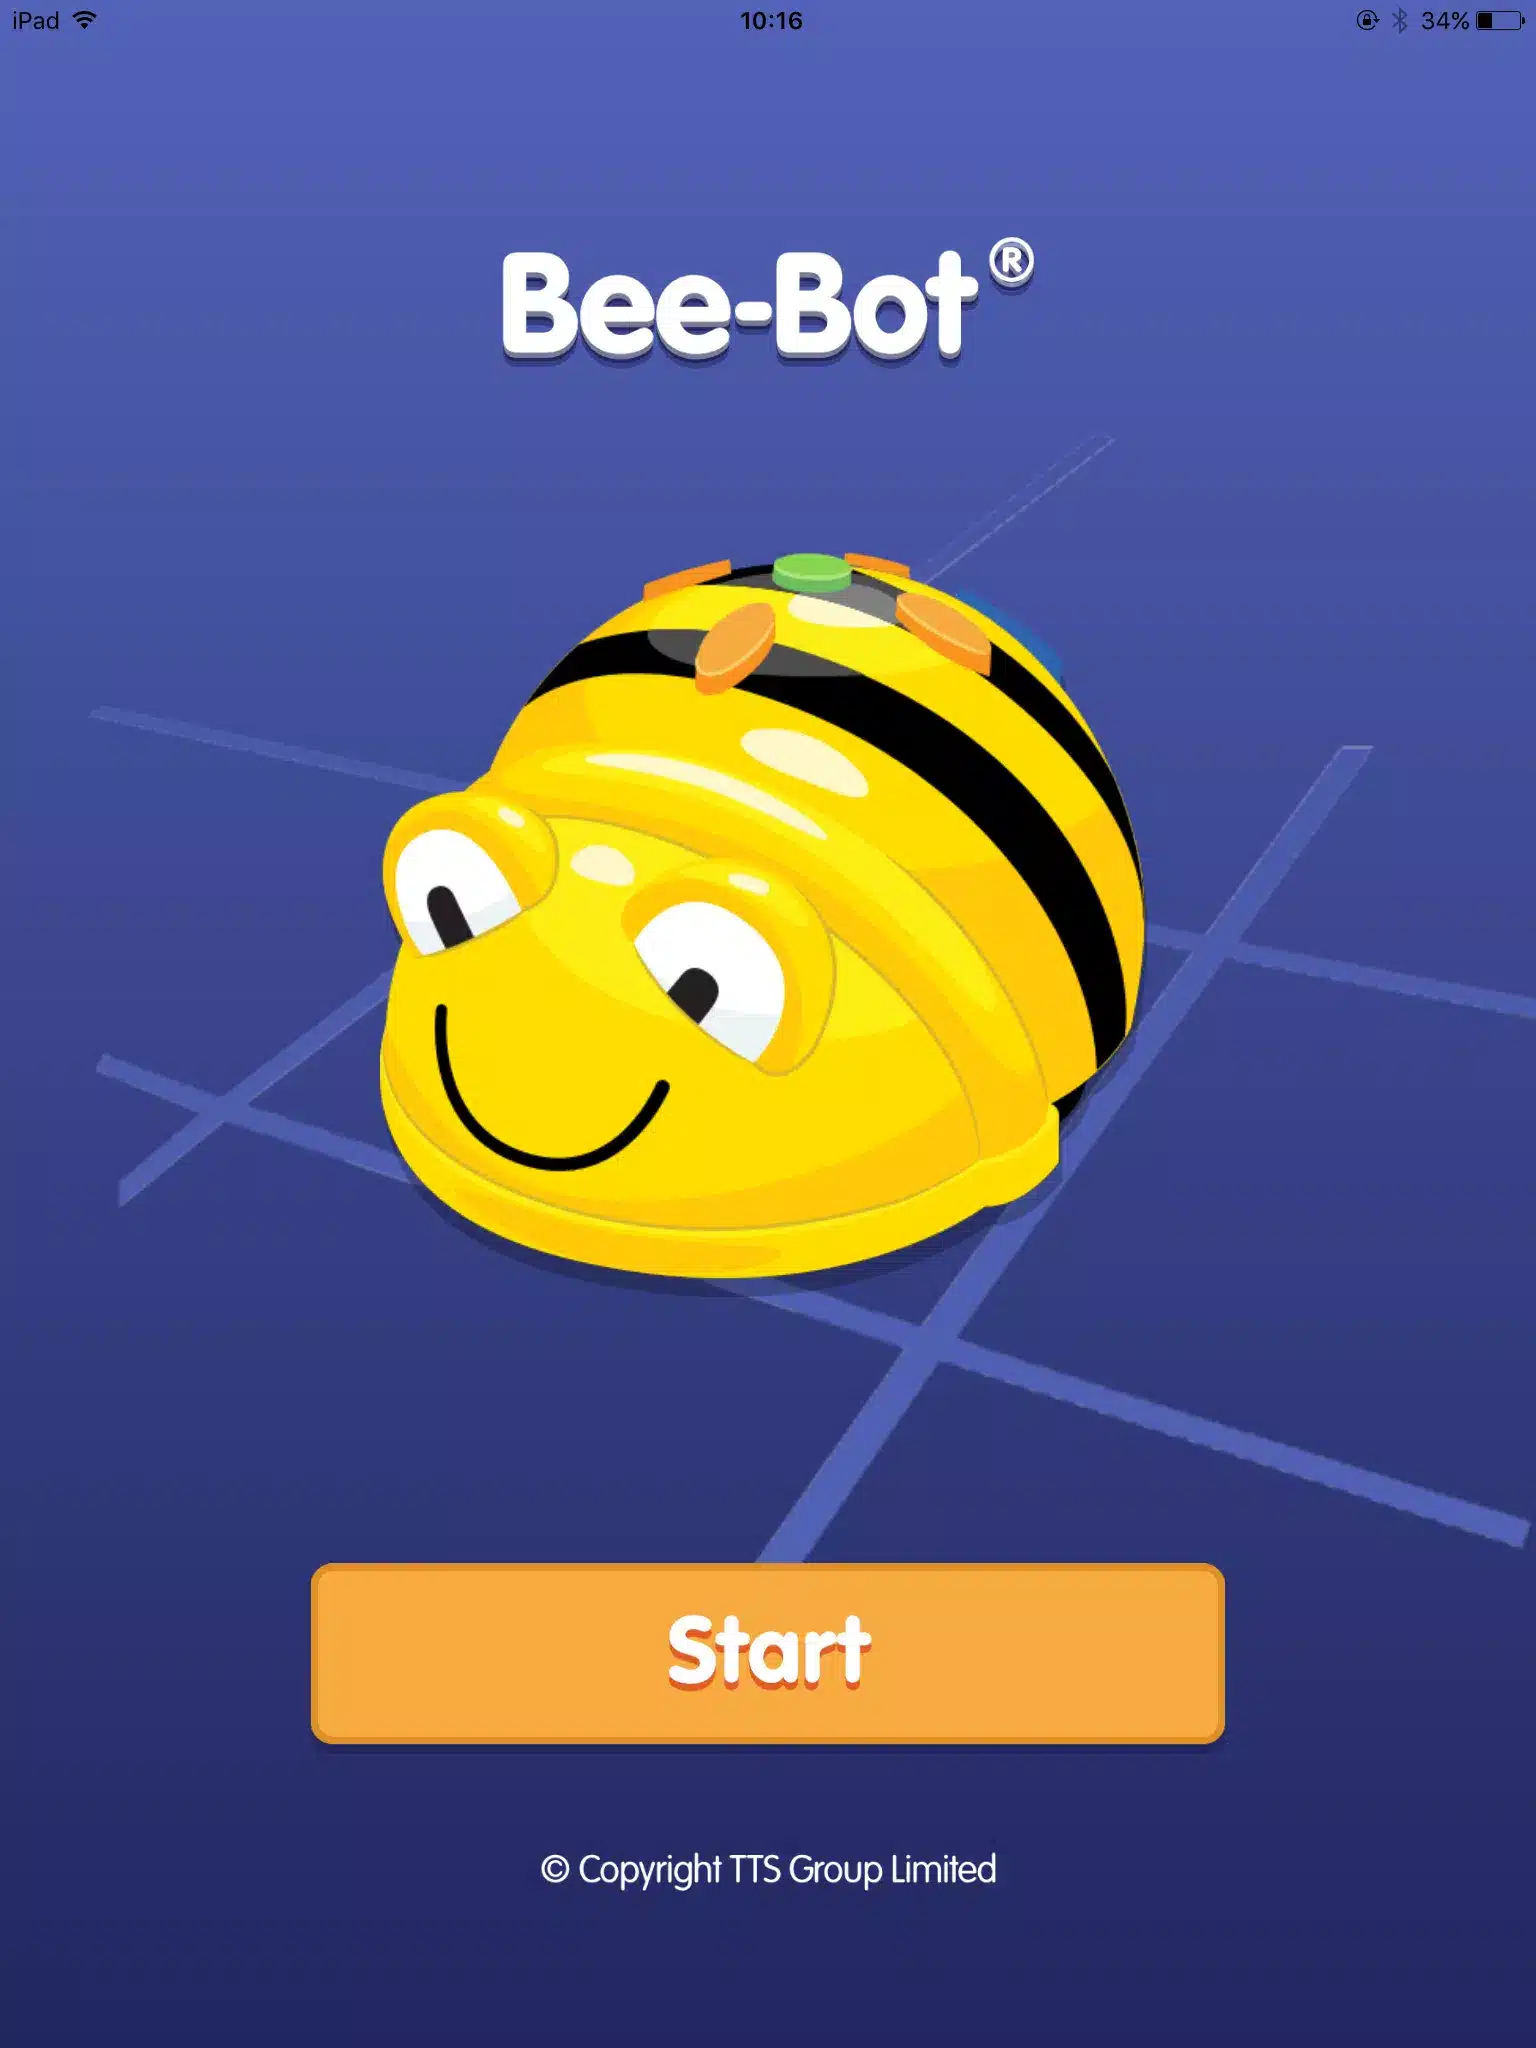 Bee-Bot Image 1